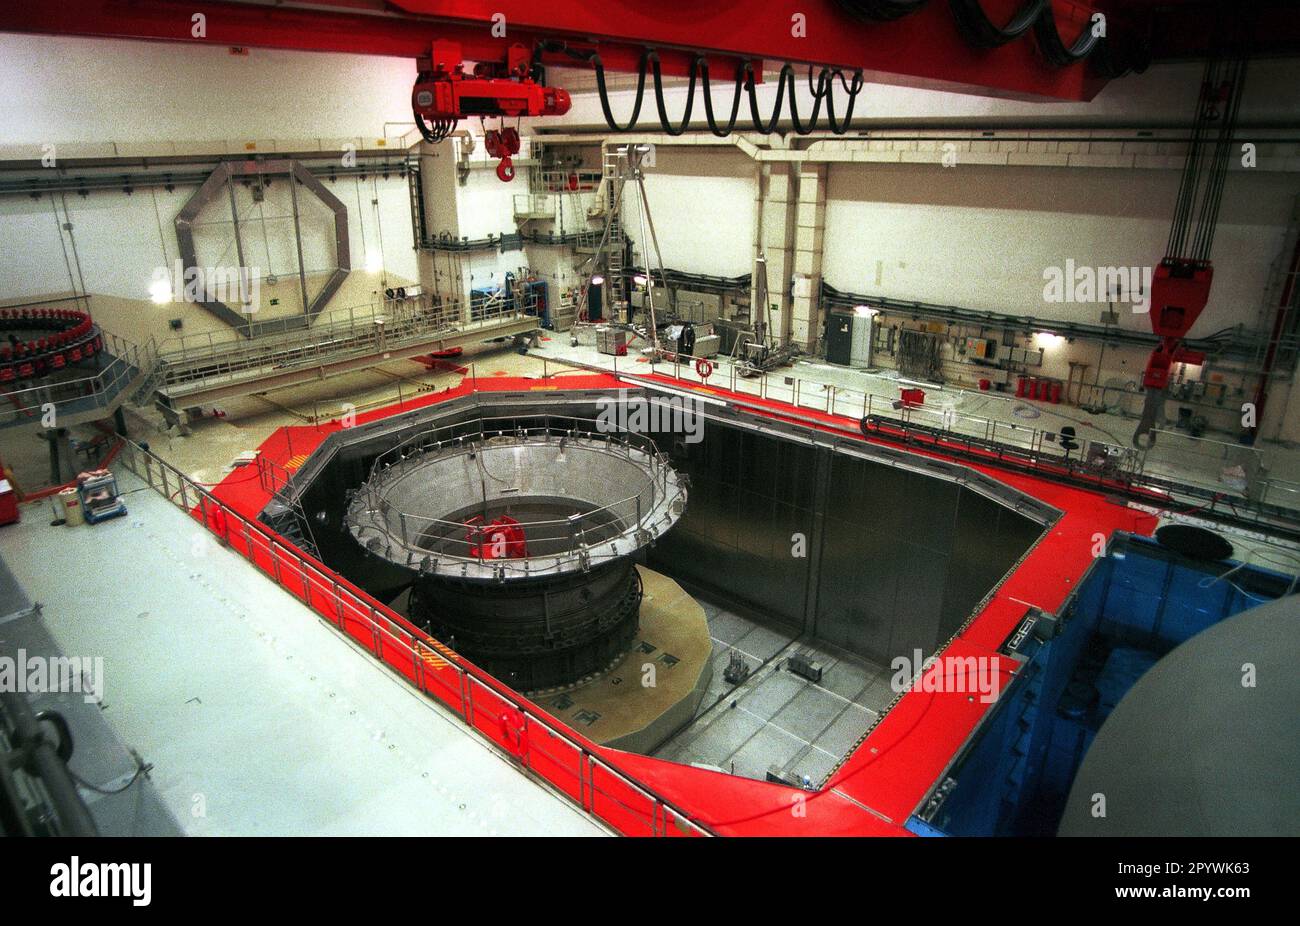 Germania / centrali nucleari / 28.10.1997 KKW Kruemmel, costruzione di reattori all'interno. Reattore // energia / energia atomica / nucleare gli operatori sono Eon e Vattenfall, in funzione dal 1983, 1400 MW di potenza, reattore ad acqua bollente [traduzione automatizzata] Foto Stock